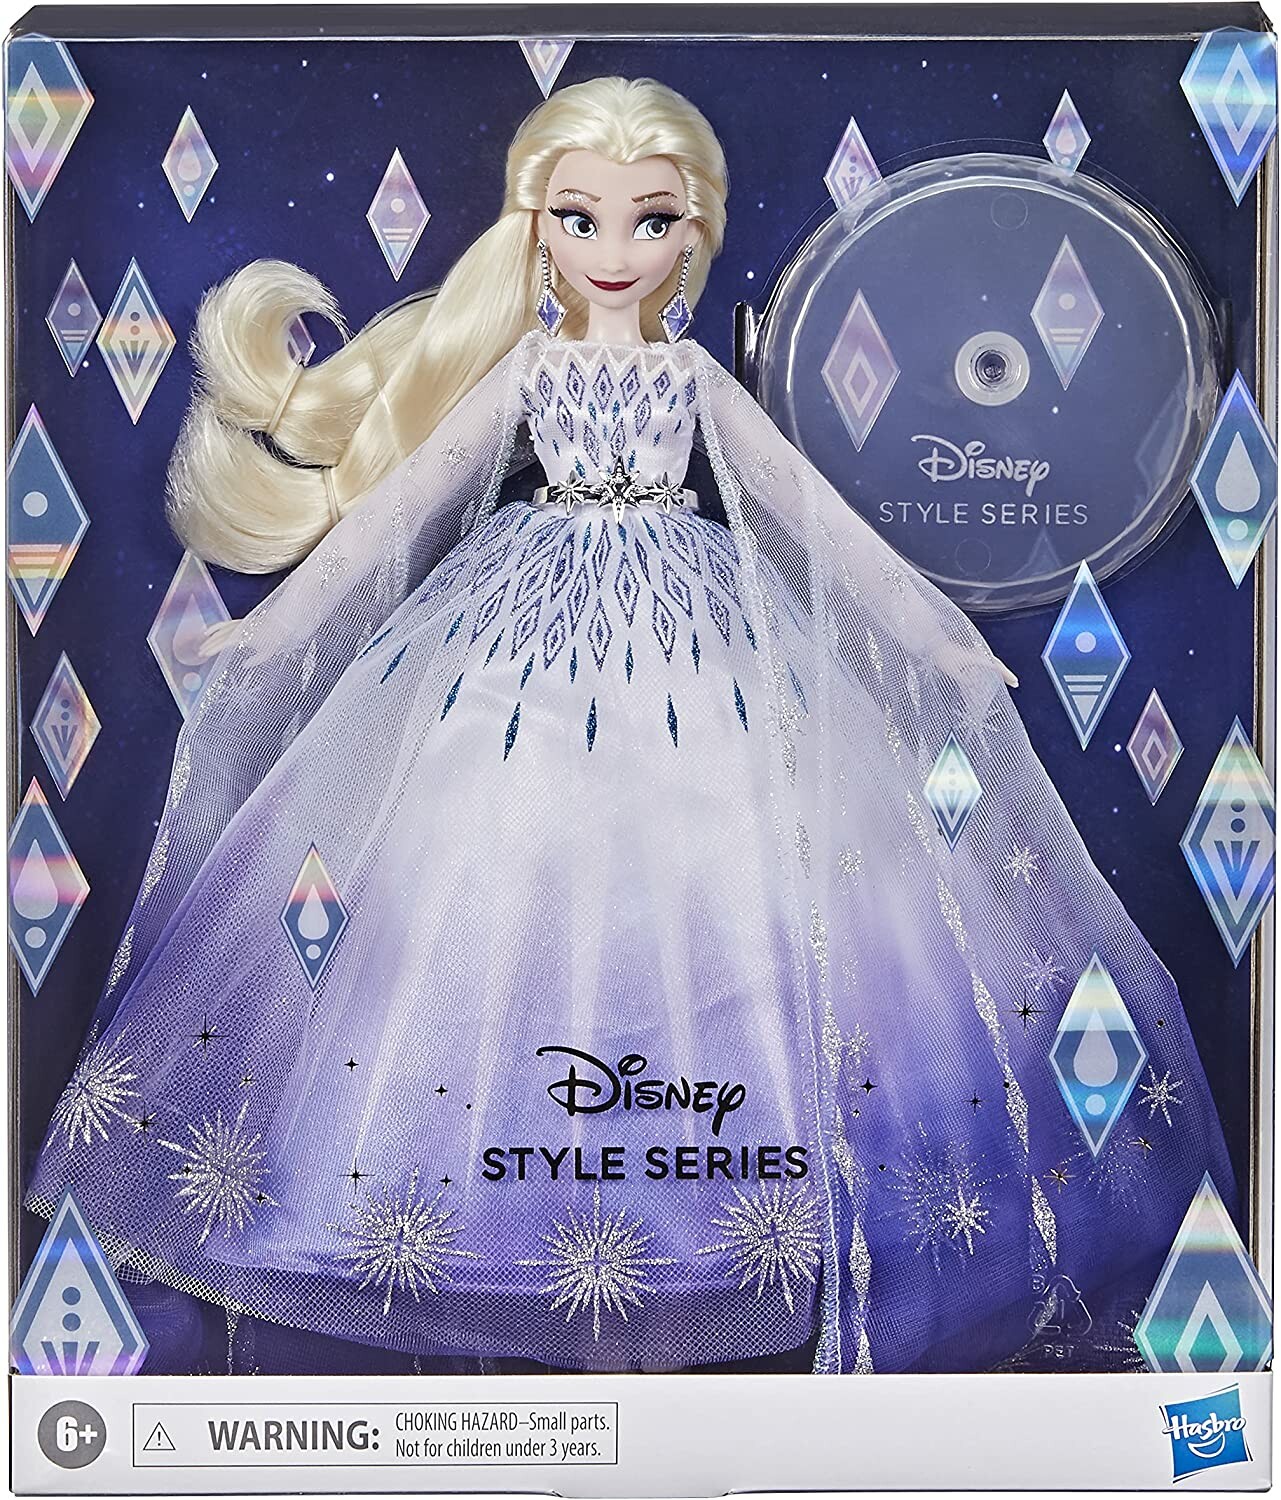 Poupée Elsa chantante DISNEY inspirée de la Reine des neiges